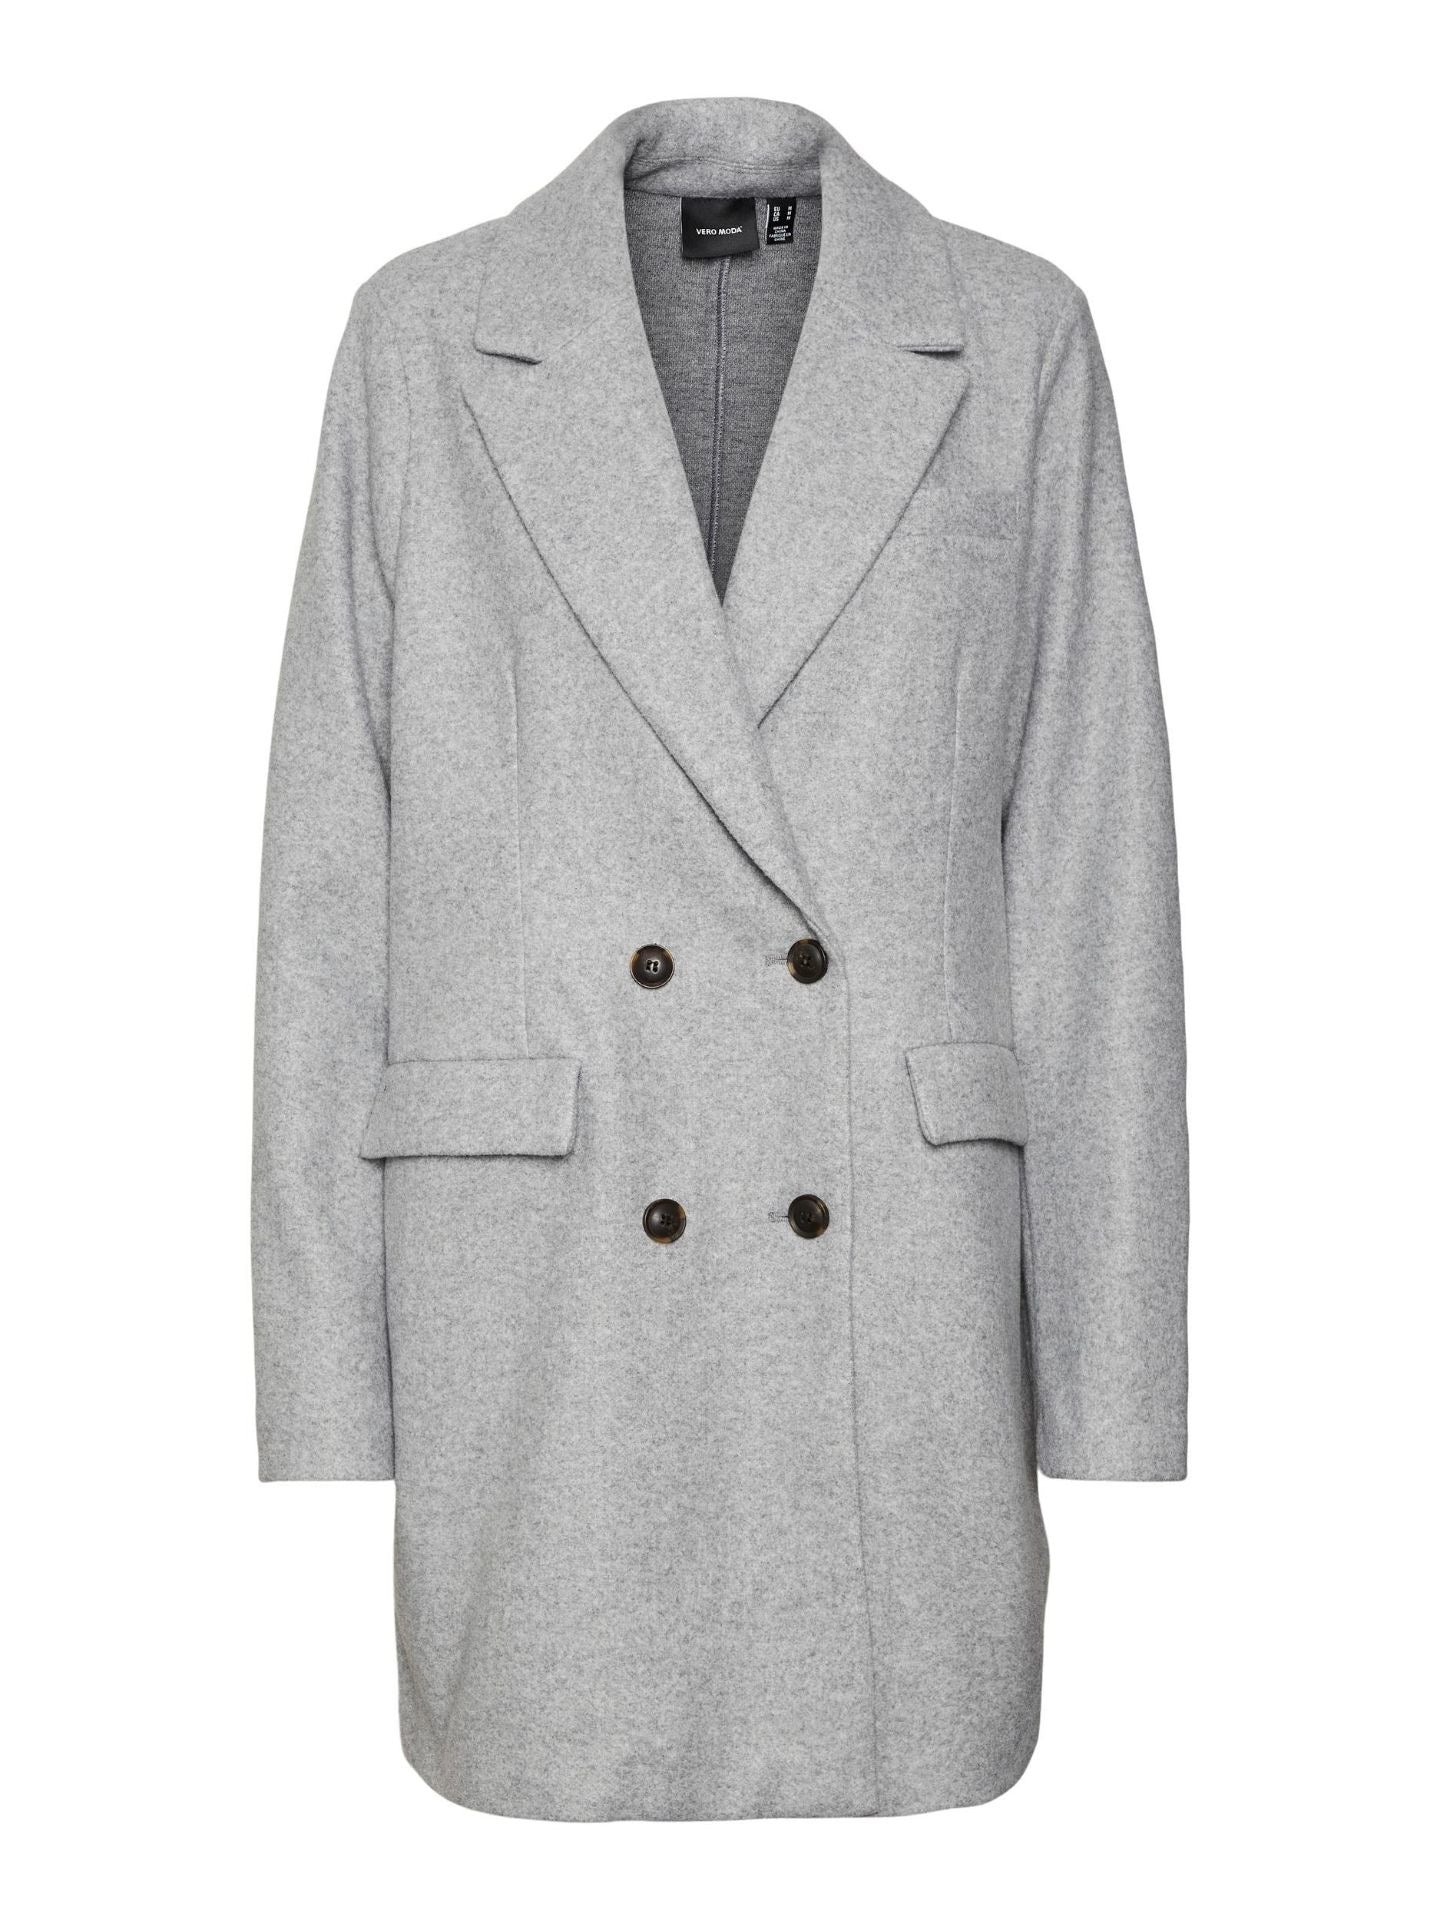 Vero Moda Vinceaura Jacket -Light Grey Melange